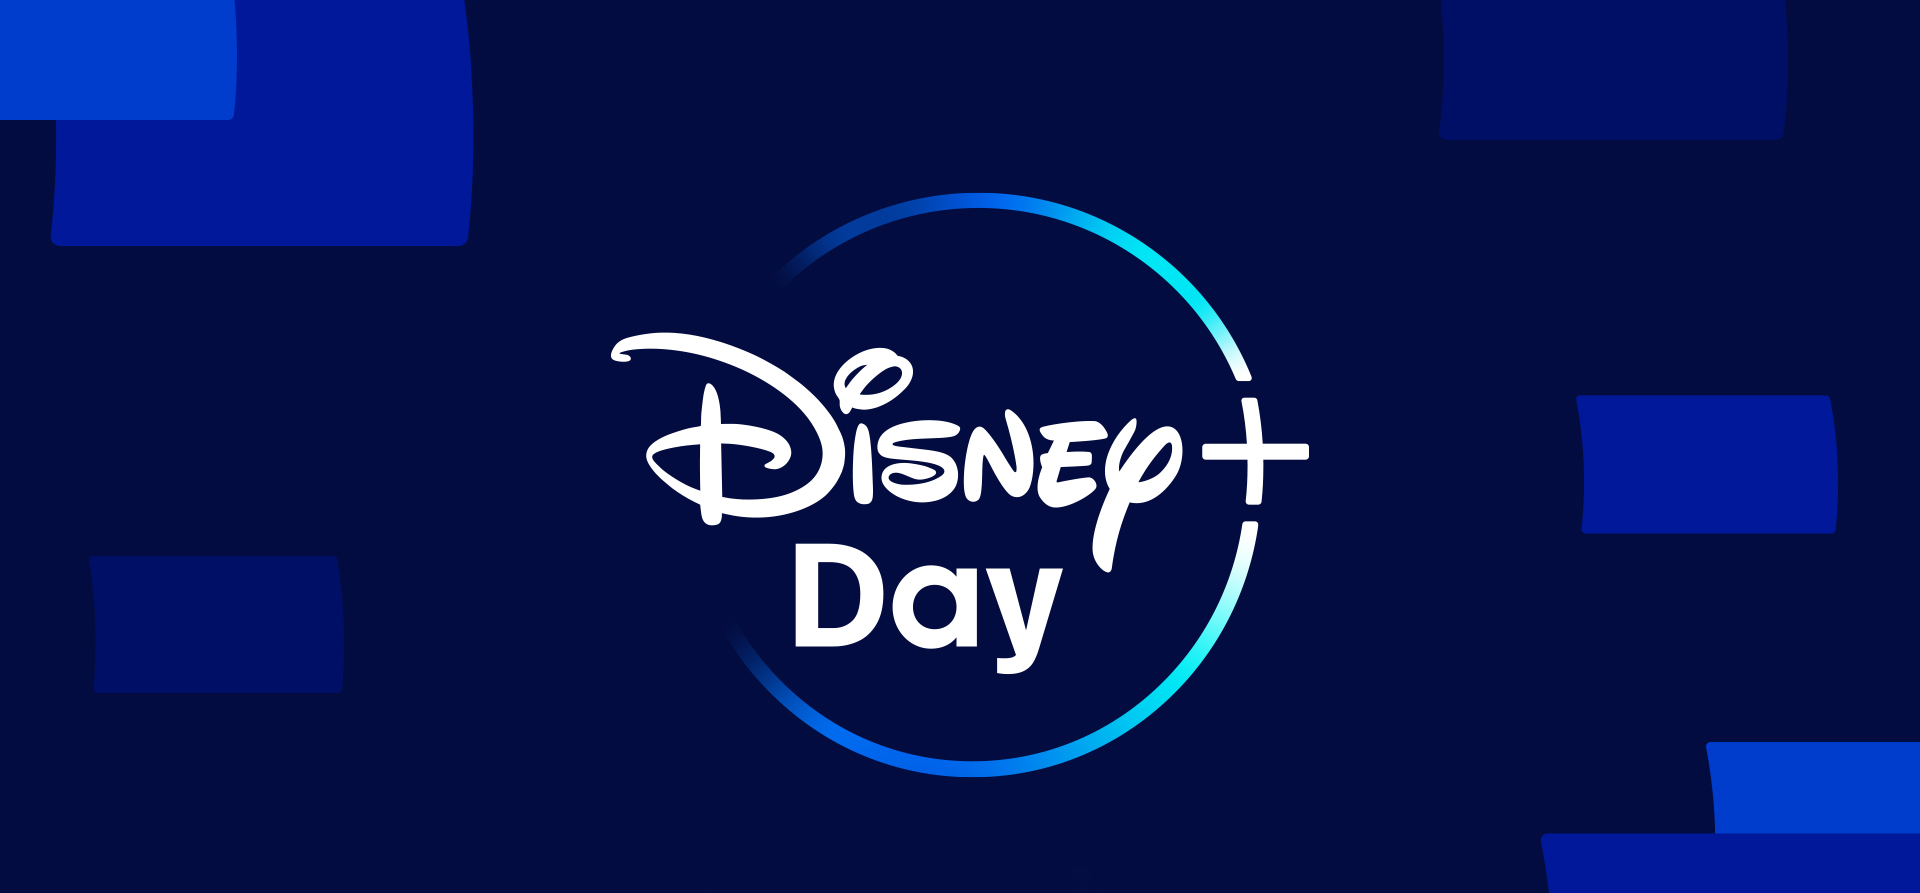 Elenco do Disney+ (menos Chris Hemsworth) celebra o “Disney+ Day”